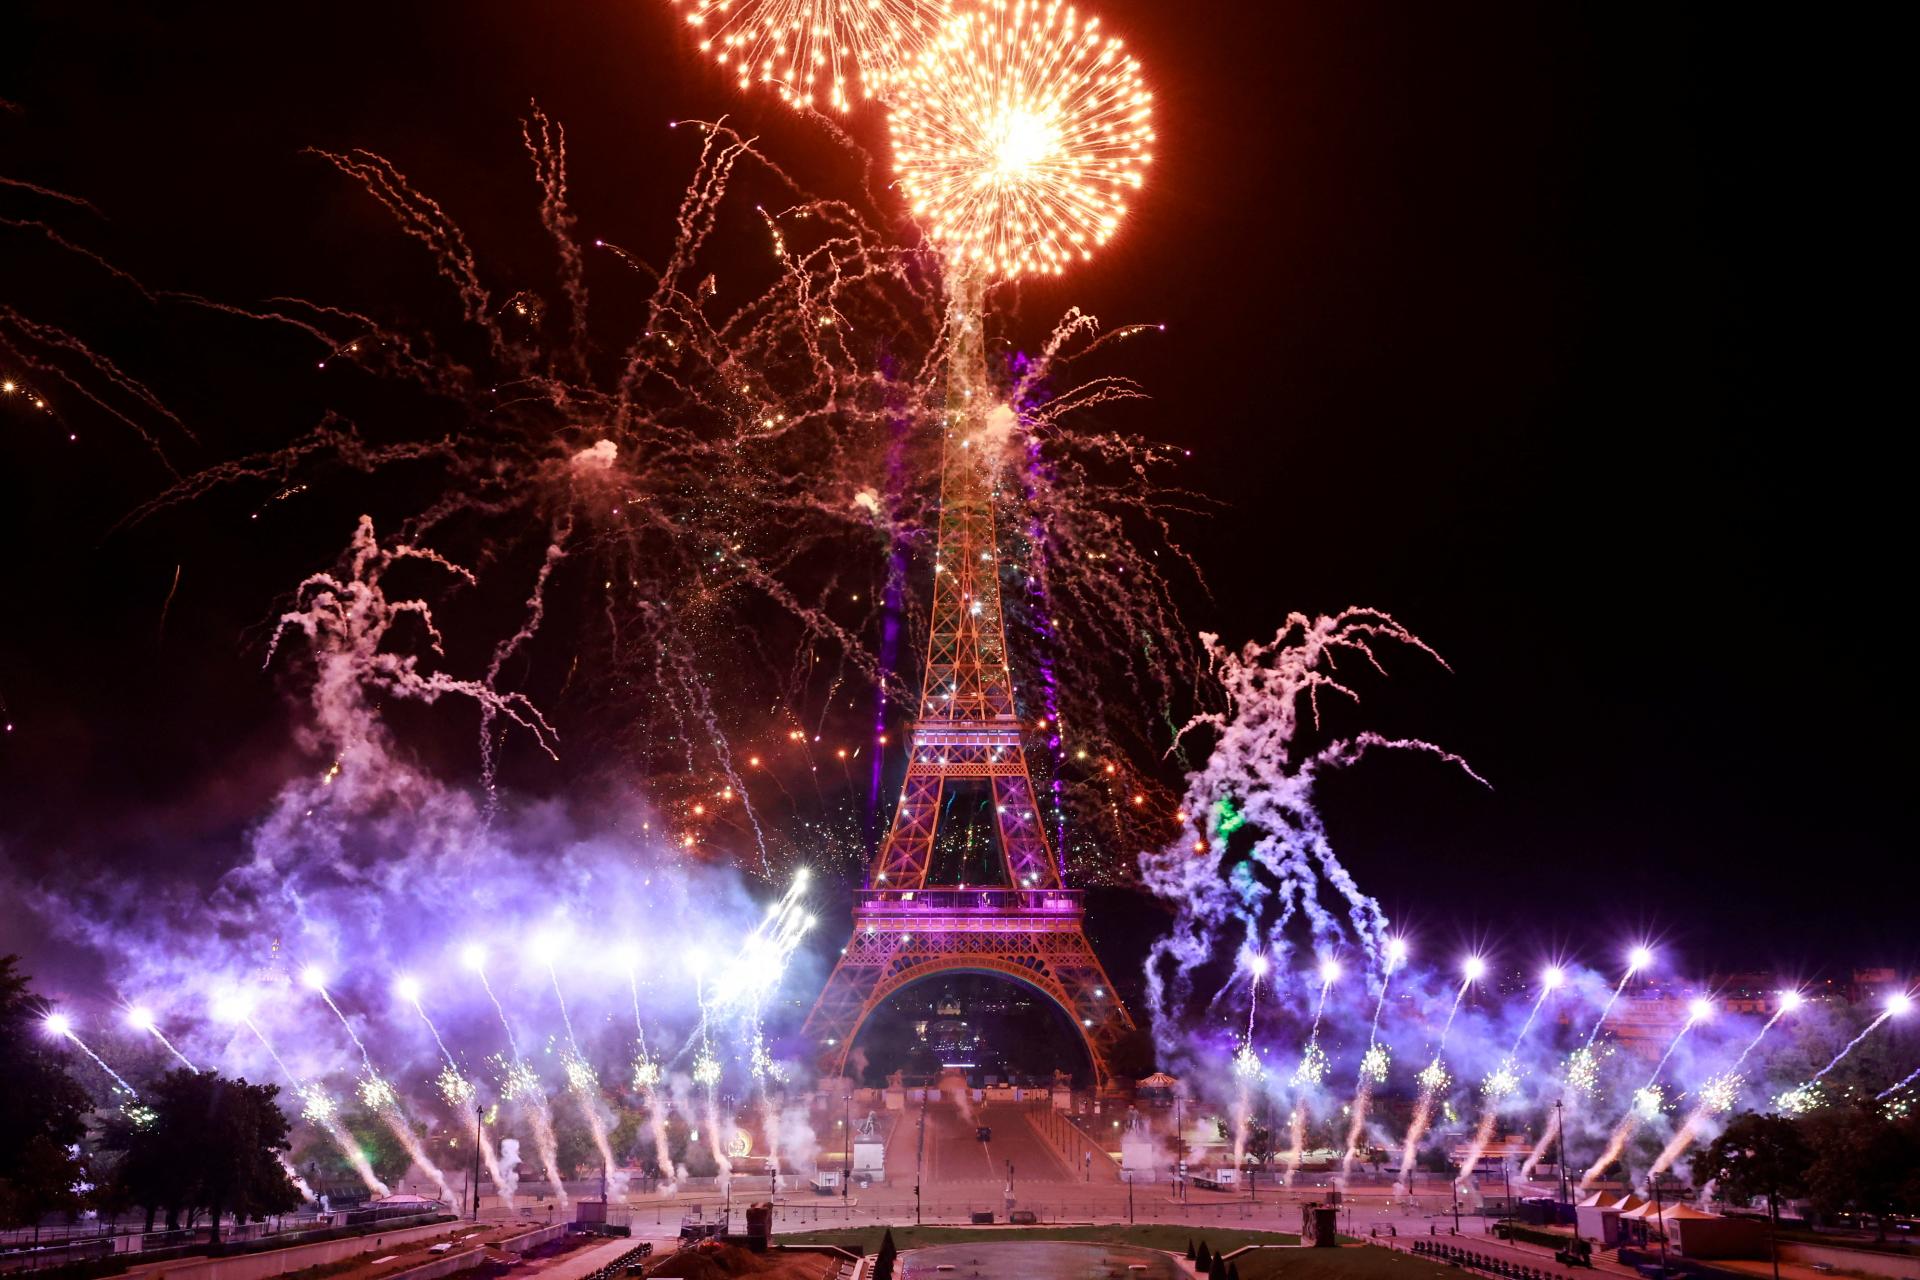 Le 14 juillet se passe presque sans encombre.  Chaque année, la fête française s’accompagne d’émeutes